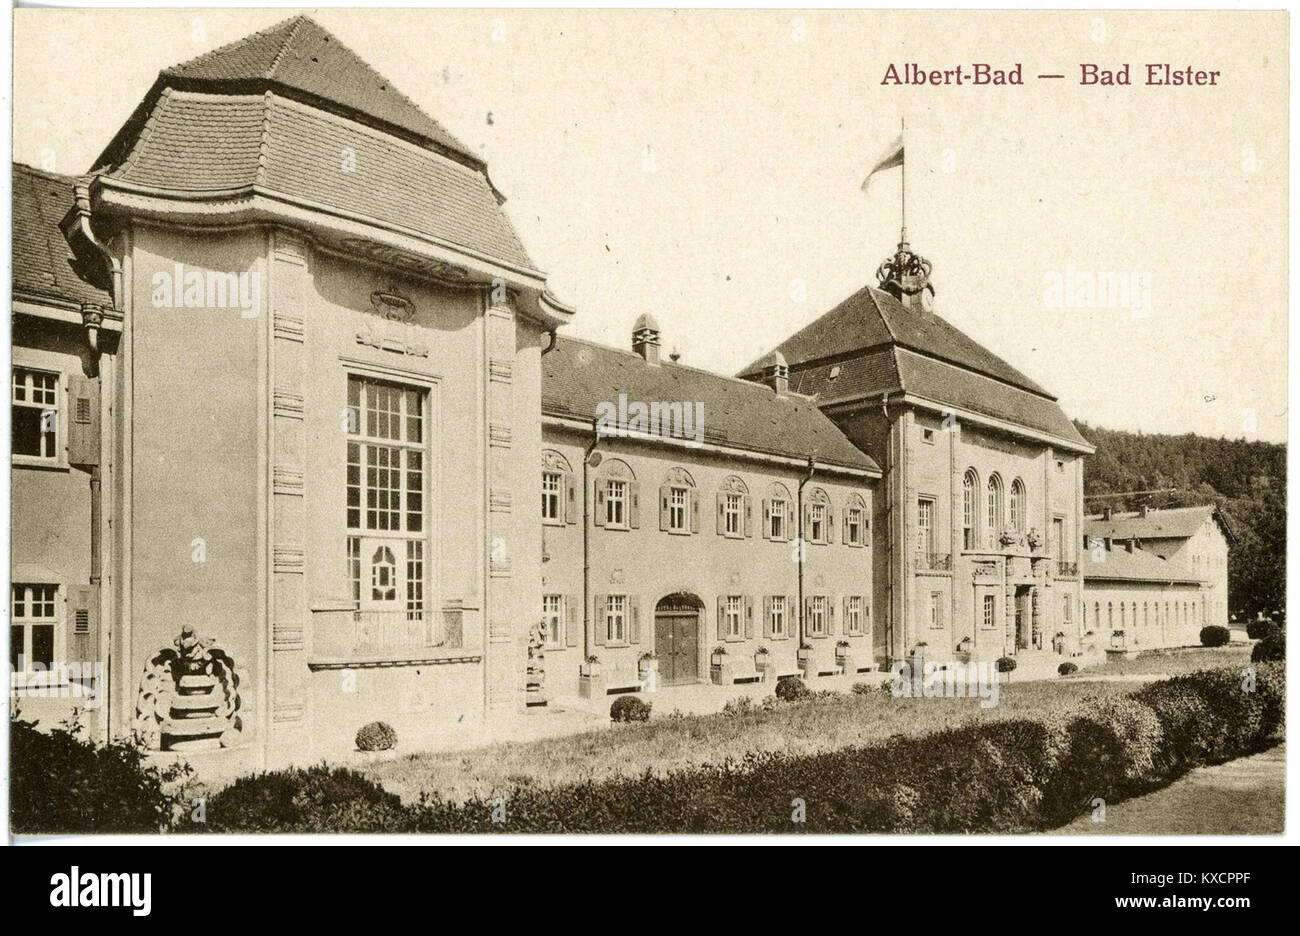 20611-Bad Elster-1917-Albertbad-Brück & Sohn Kunstverlag Foto Stock